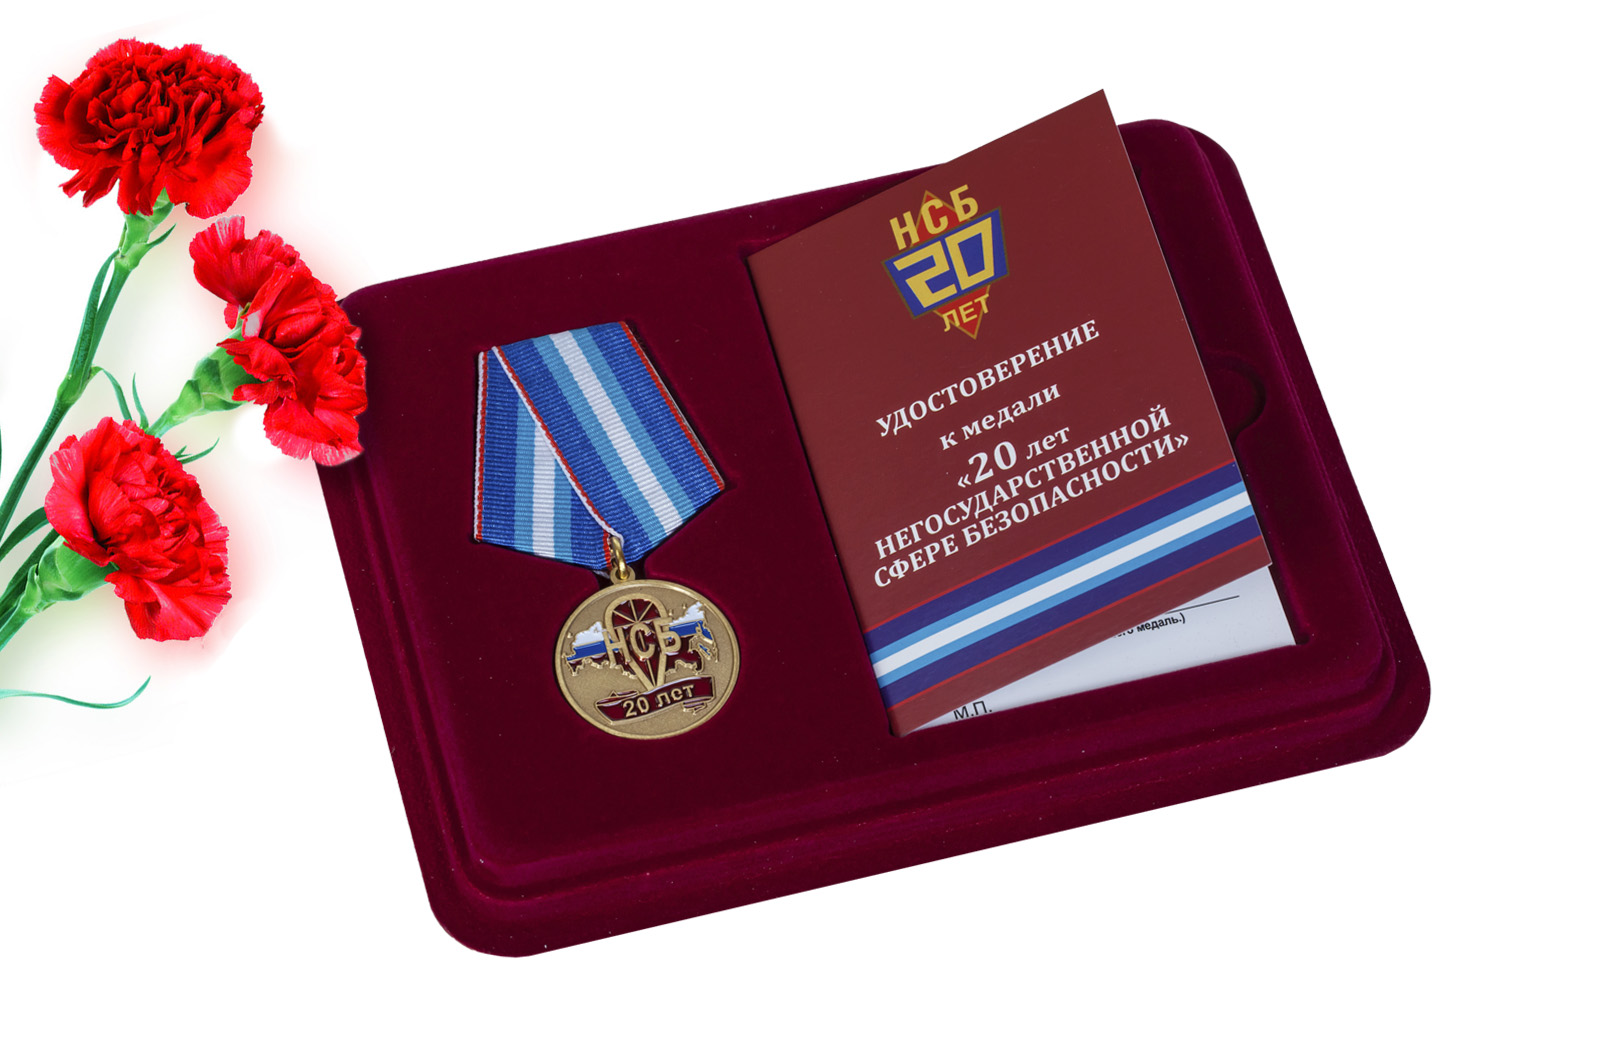 Купить памятную медаль 20 лет Негосударственной сфере безопасности онлайн